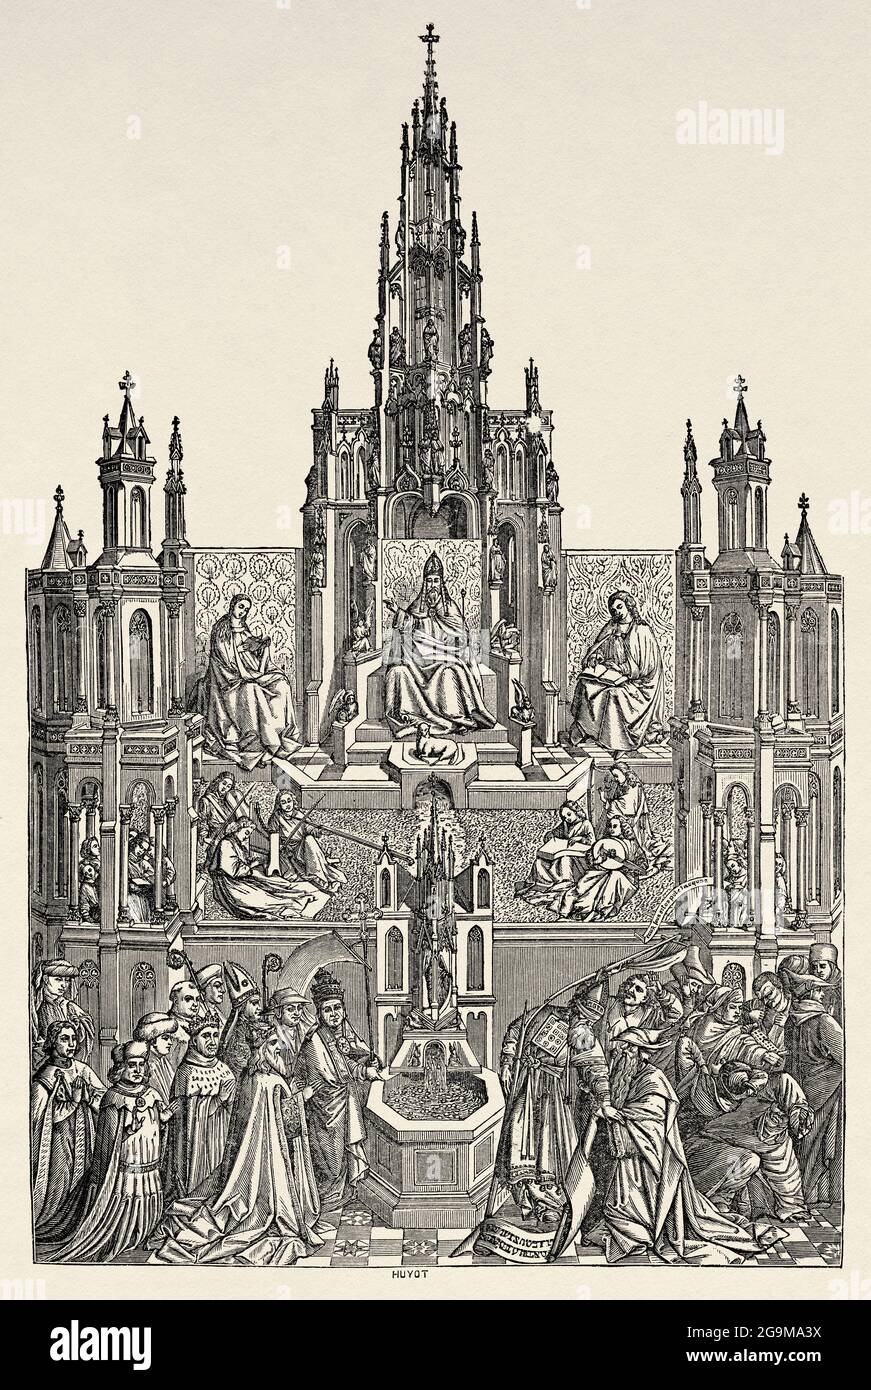 La Fuente De La Vida. Der Brunnen der Gnade, Gemälde von Jan van Eyck (1390-1441) war ein flämischer Maler. Alte Illustration von Jesus Christus aus dem 19. Jahrhundert von Veuillot 1881 Stockfoto